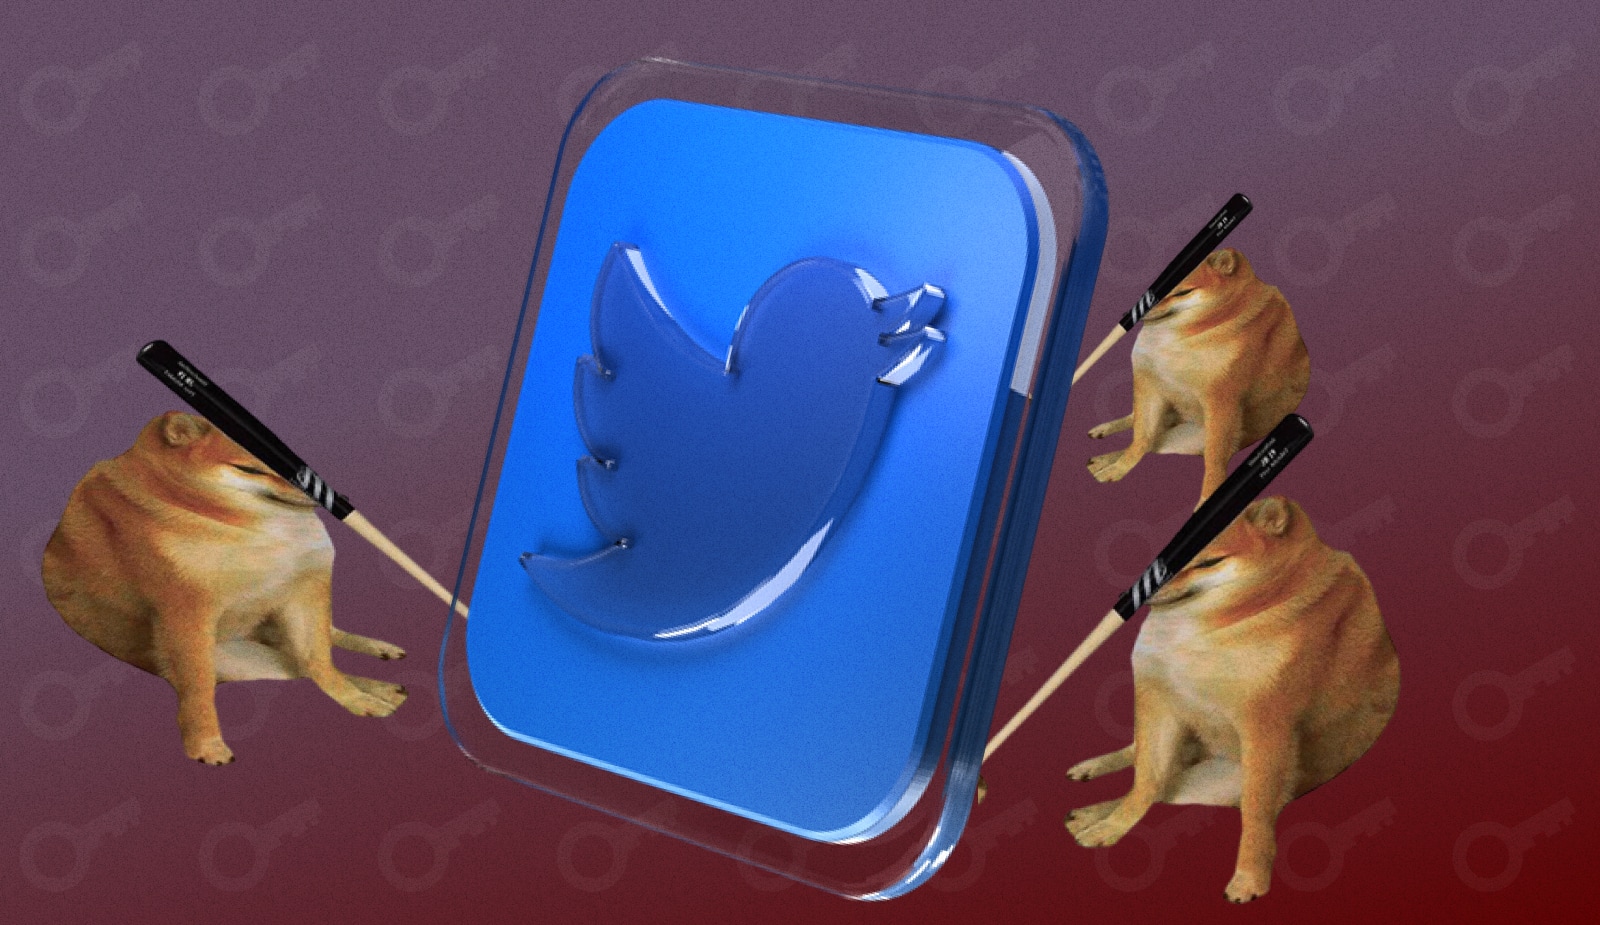 Тройной удар от Twitter обрушил курс Dogecoin на 10%. Заглавный коллаж новости.